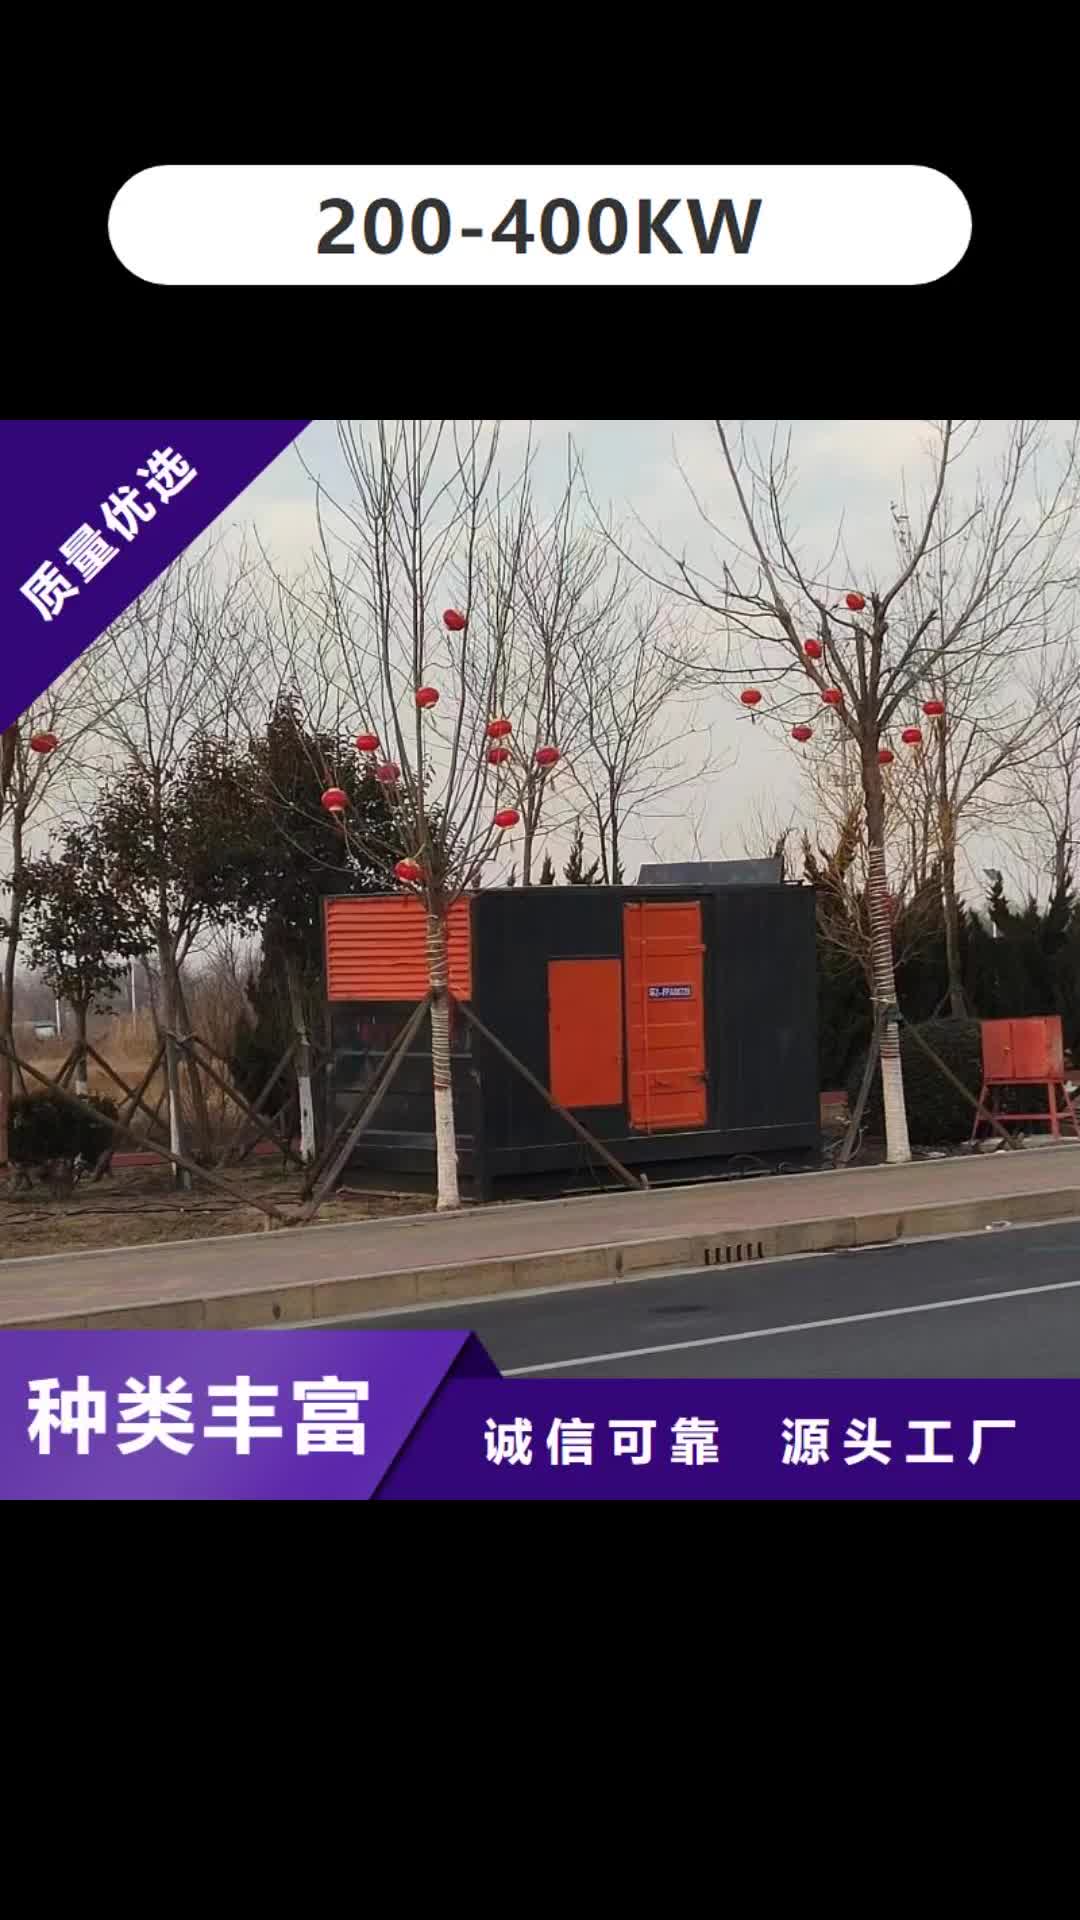 南通【200-400KW】,200KW发电车租赁拥有核心技术优势